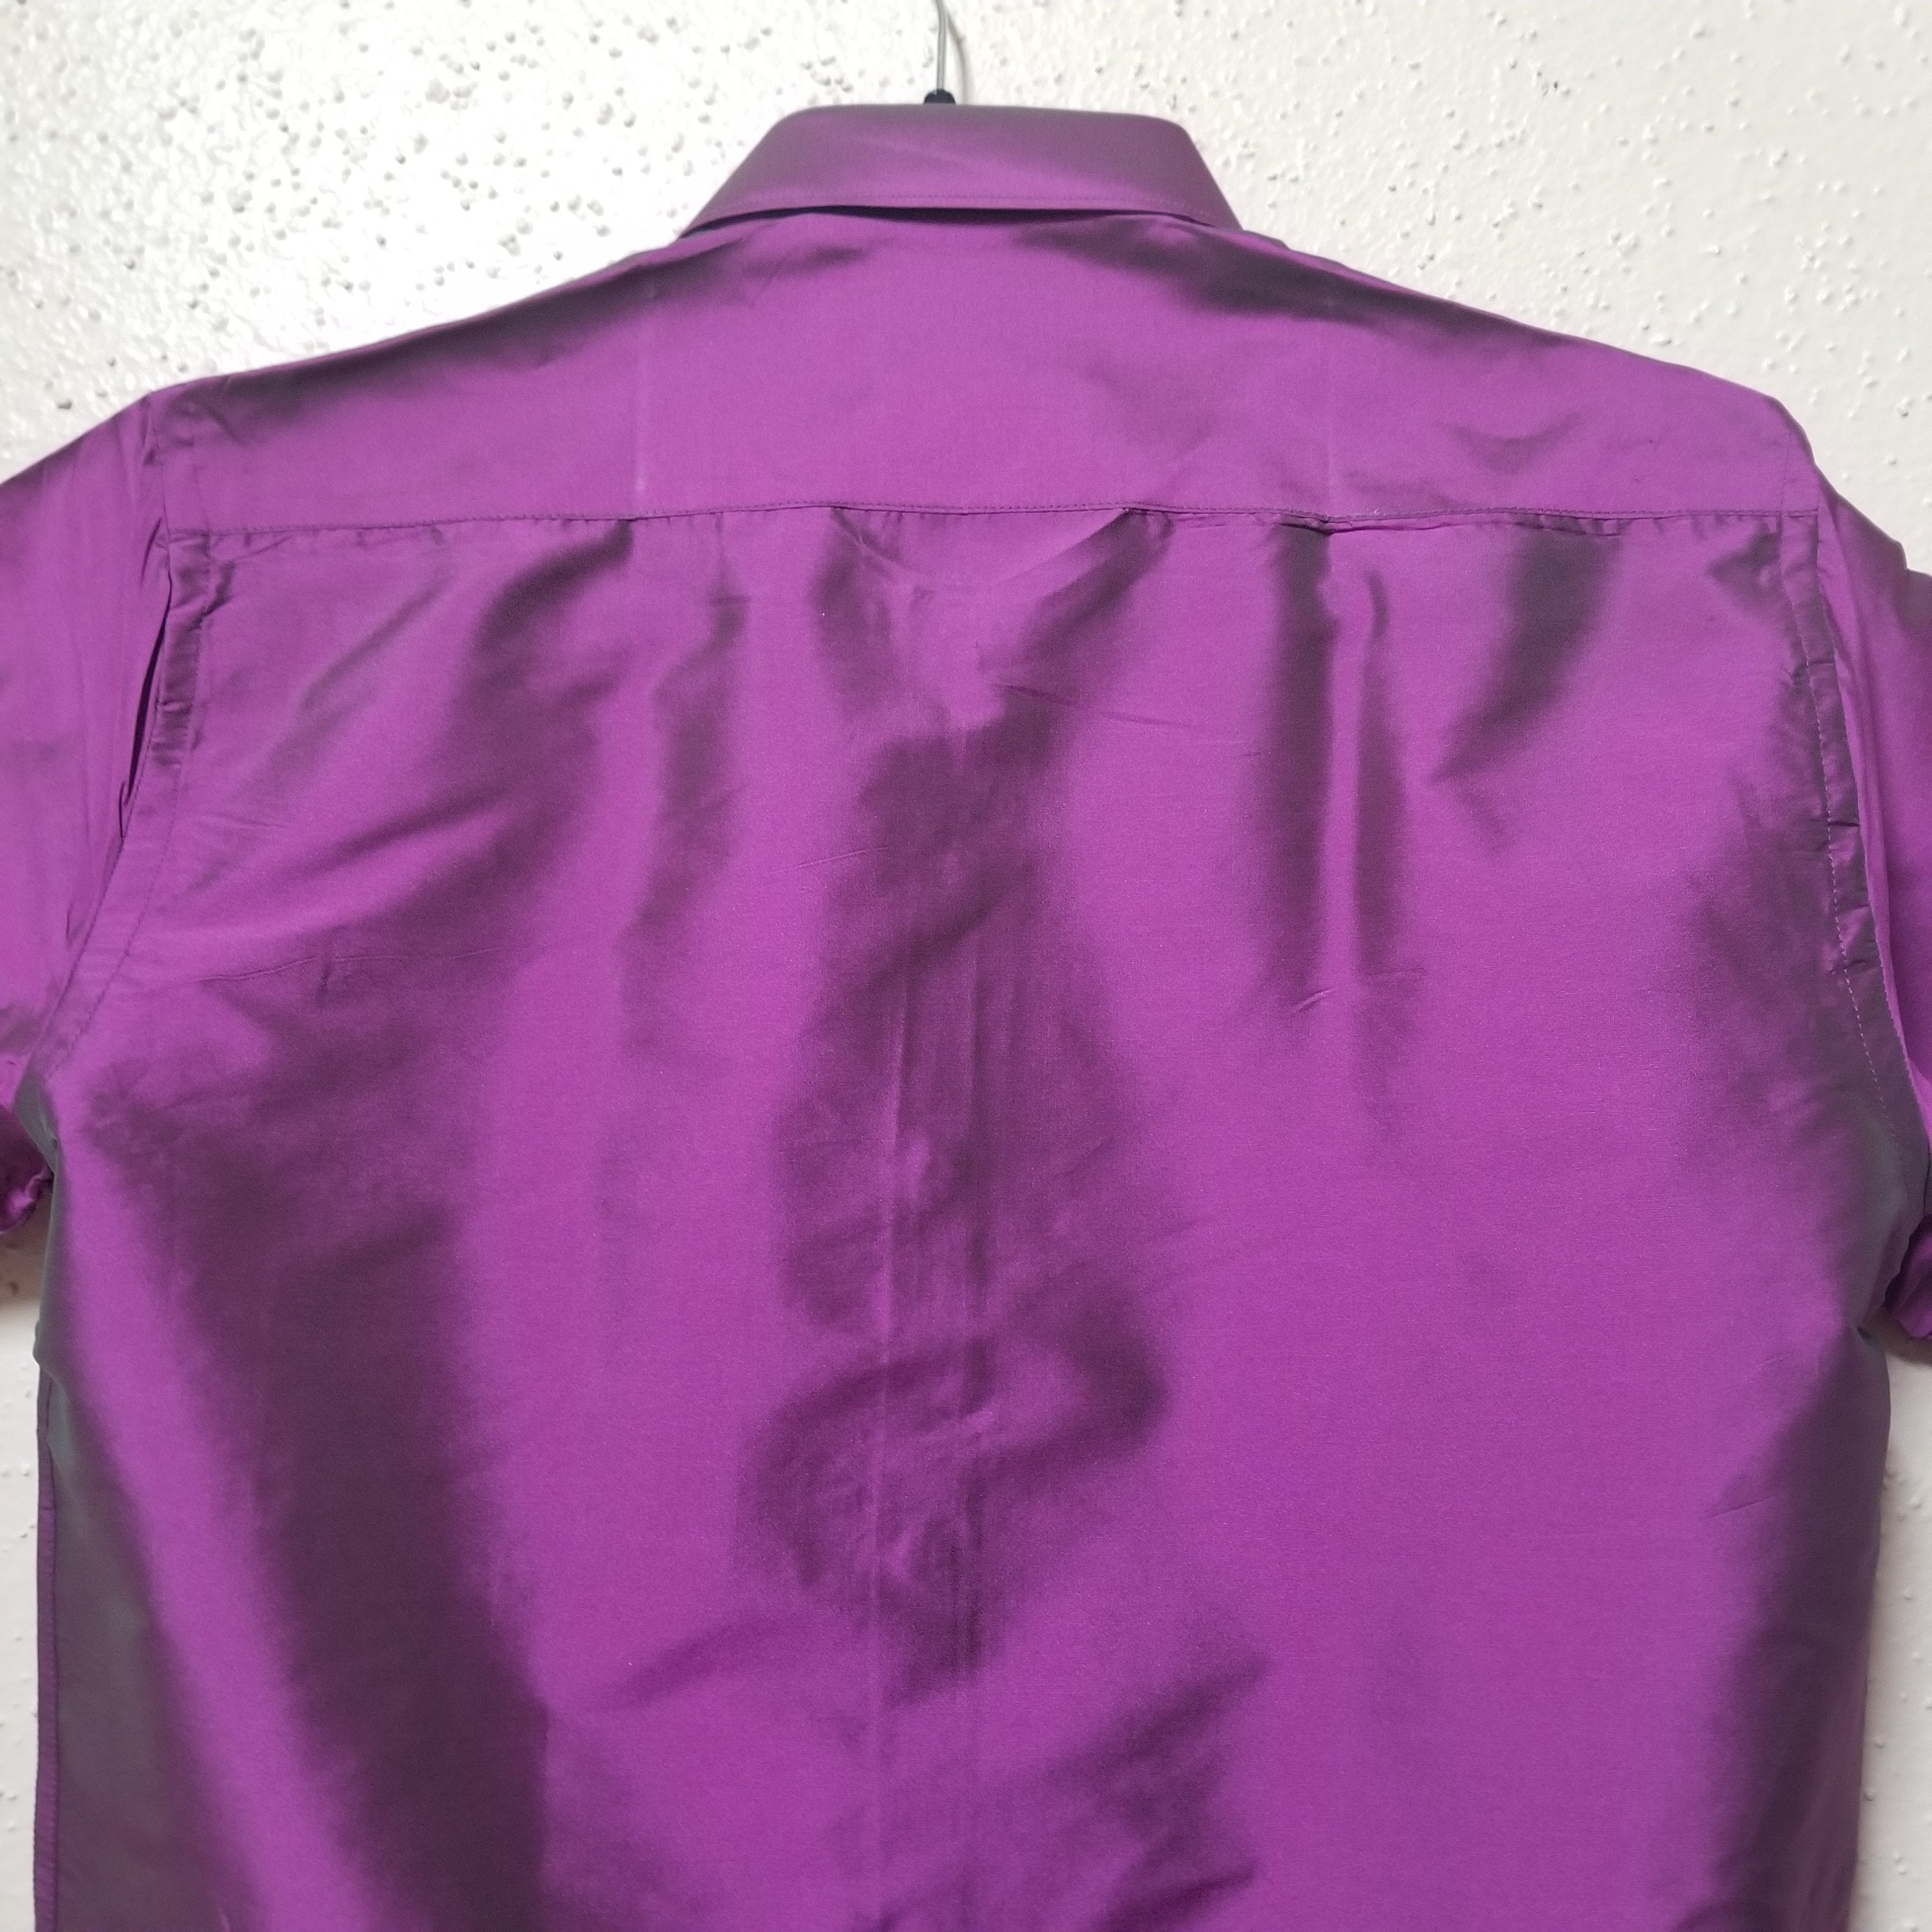 Men's Silk Shirt - Half Hand - Violet Color - Size 38 - M Size - Partywear Shirt - Indian Dresses